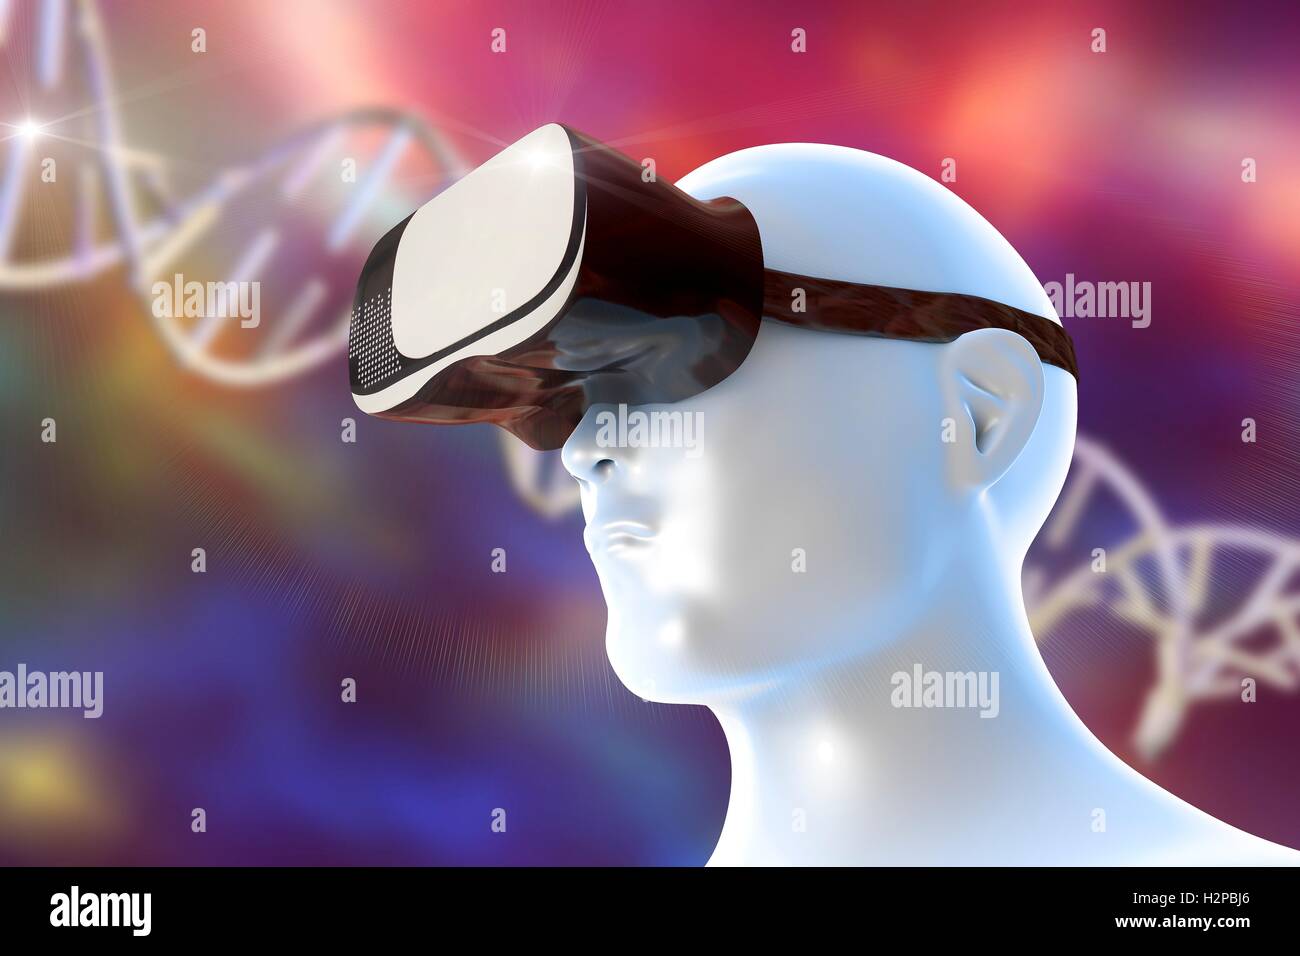 Tête humaine portant un casque de réalité virtuelle. Du point de vue conceptuel montrant l'image de la réalité virtuelle dans les domaines de l'éducation et de la science. Un ADN (acide désoxyribonucléique) est une molécule dans l'arrière-plan. Banque D'Images